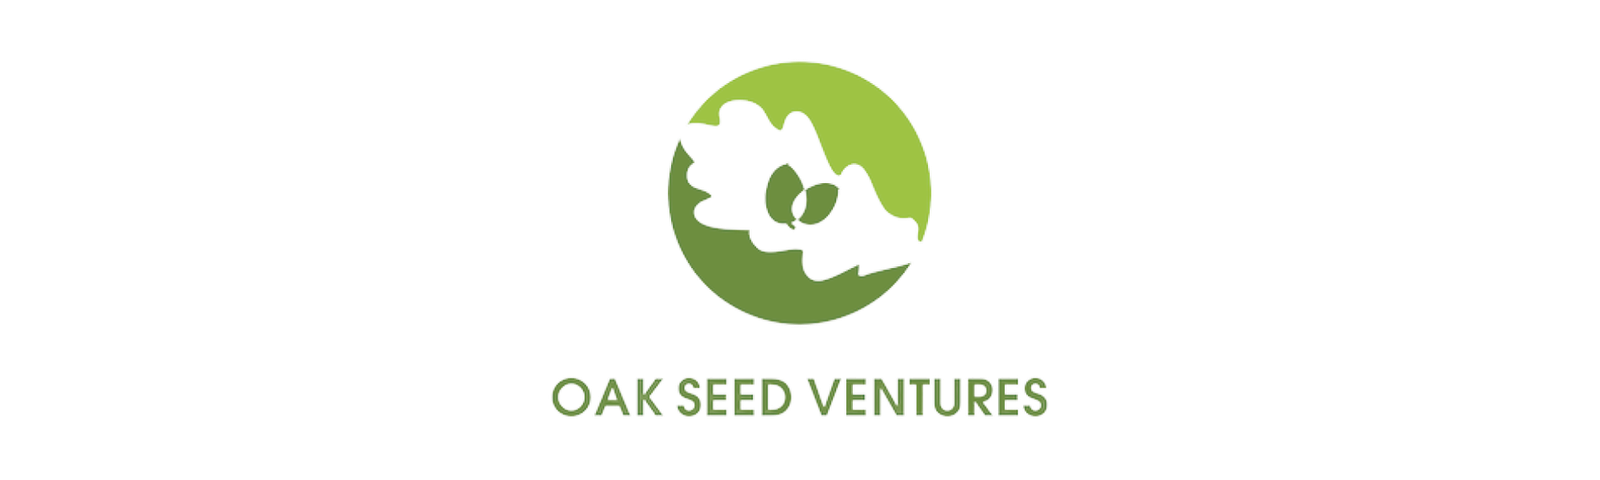 OAK-Seed-ventures.png